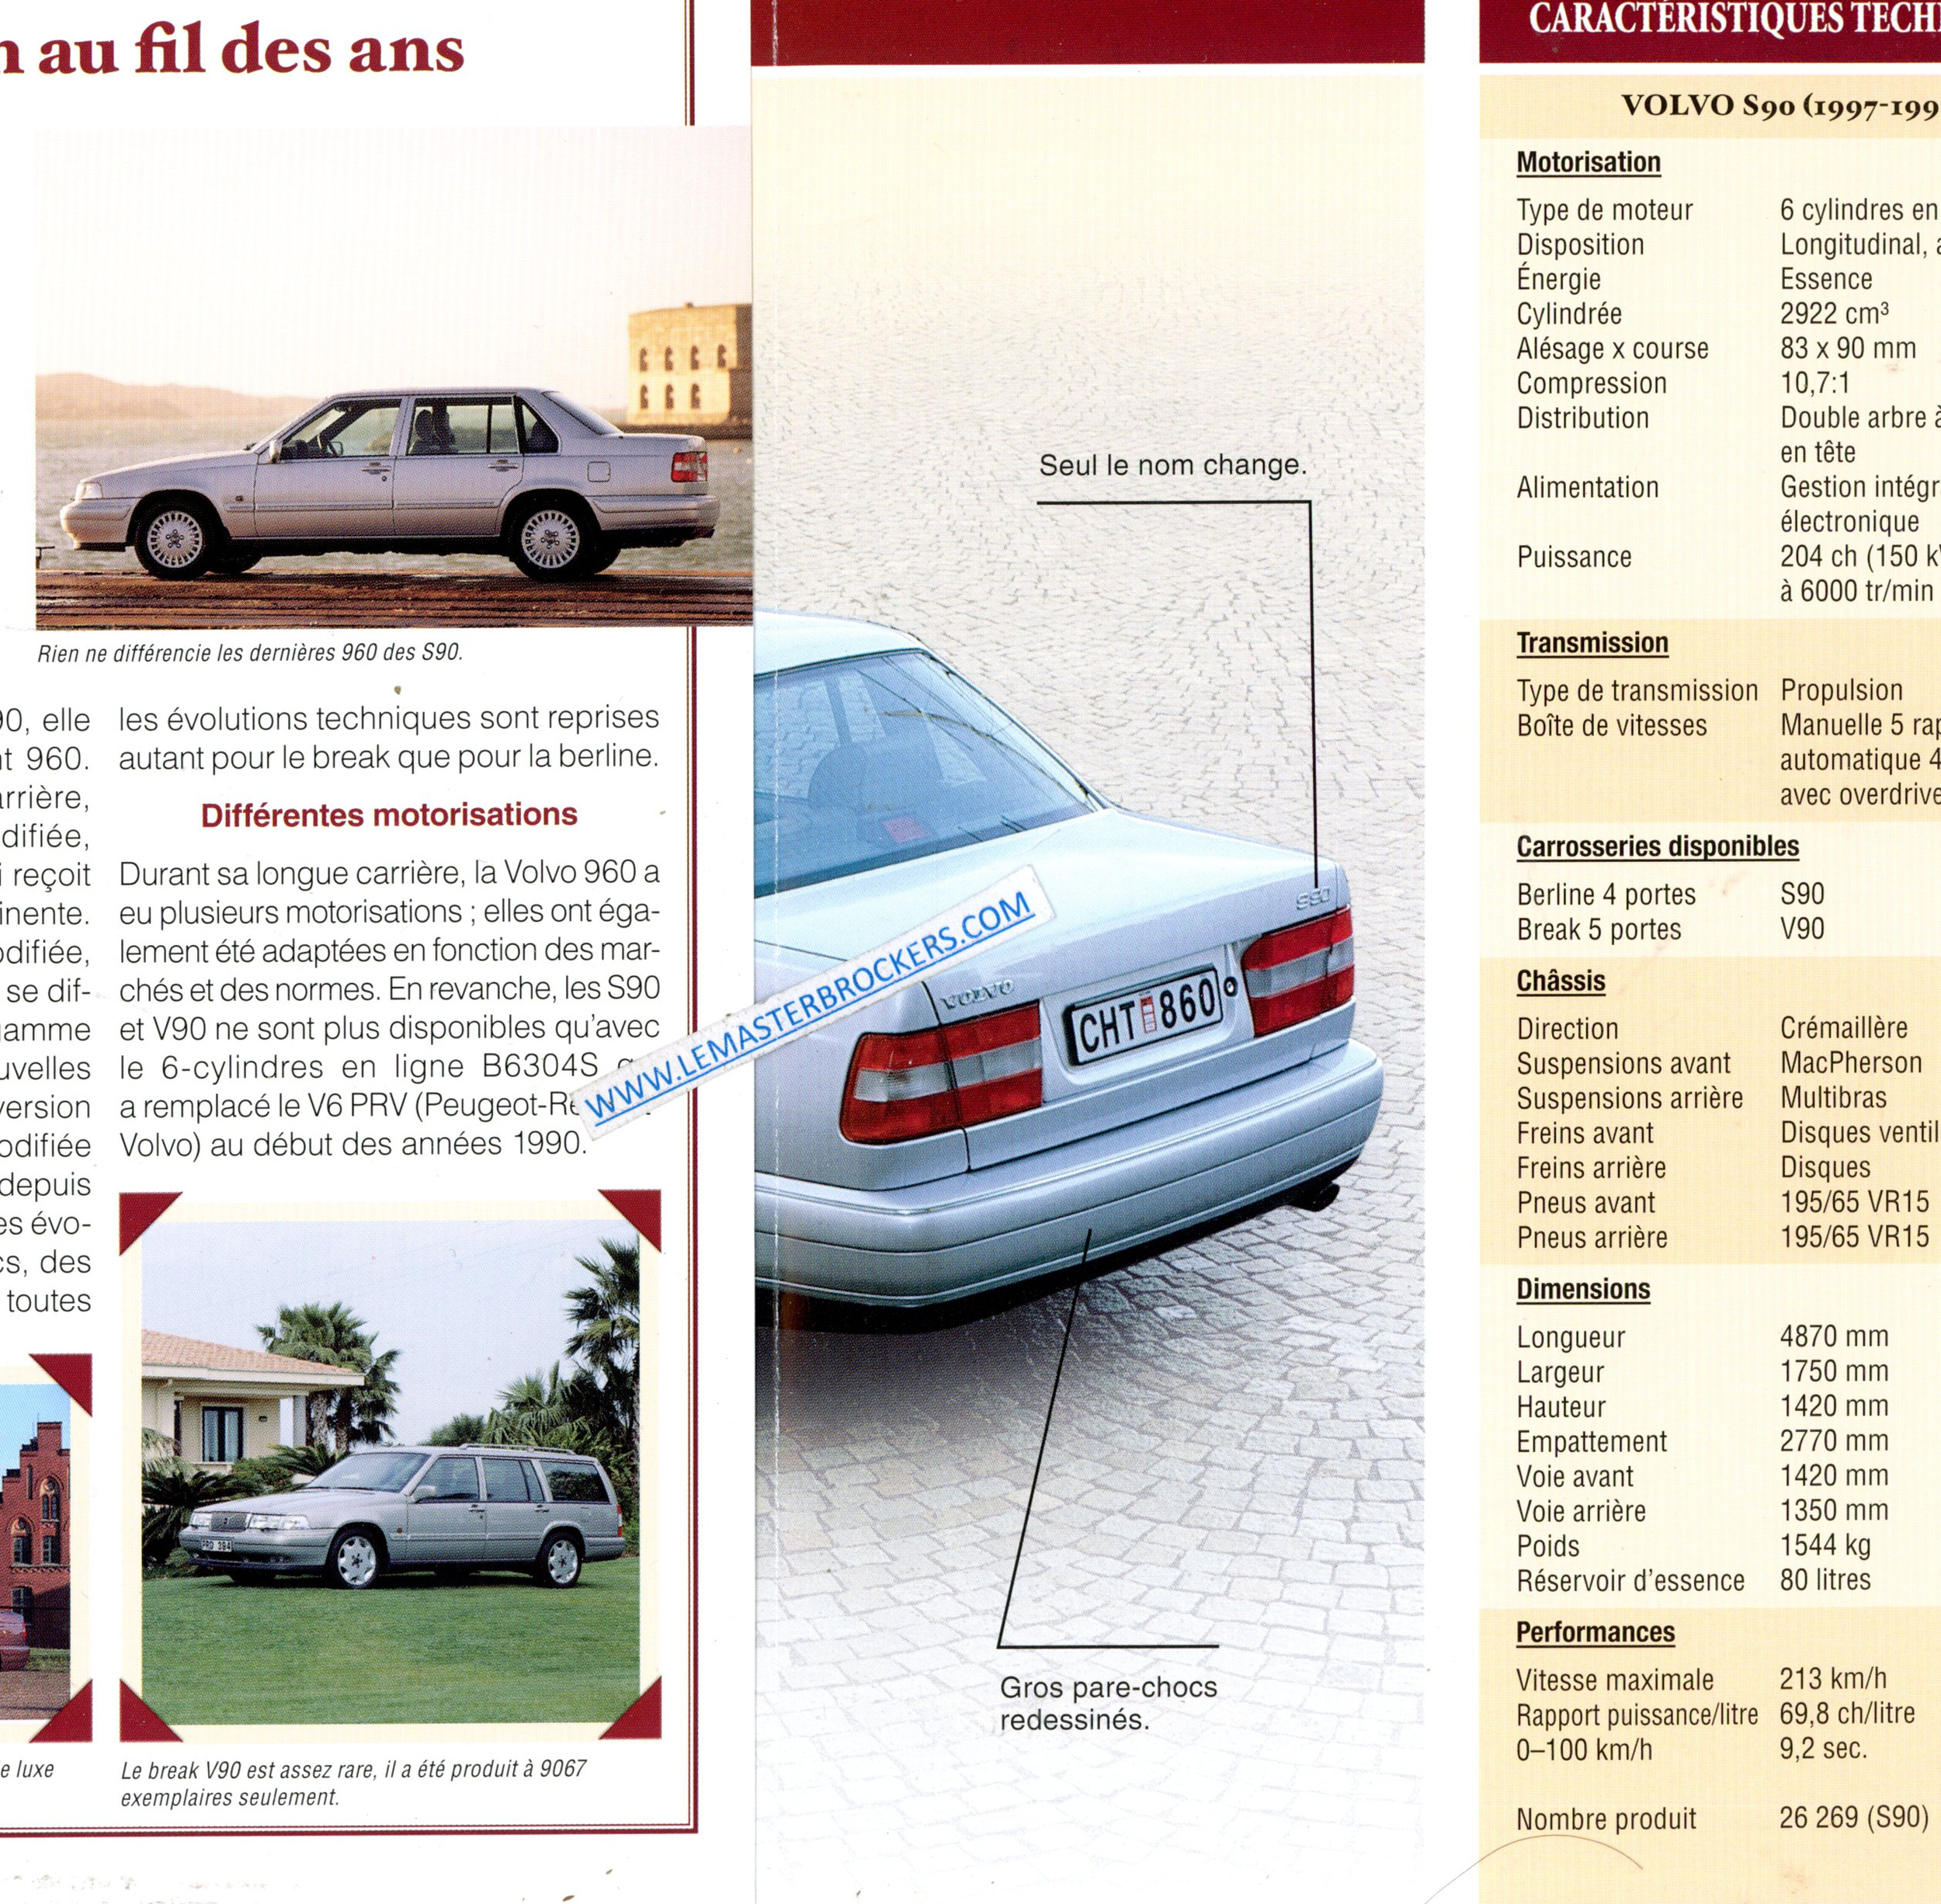 BROCHURE VOLVO S90 1997 1998